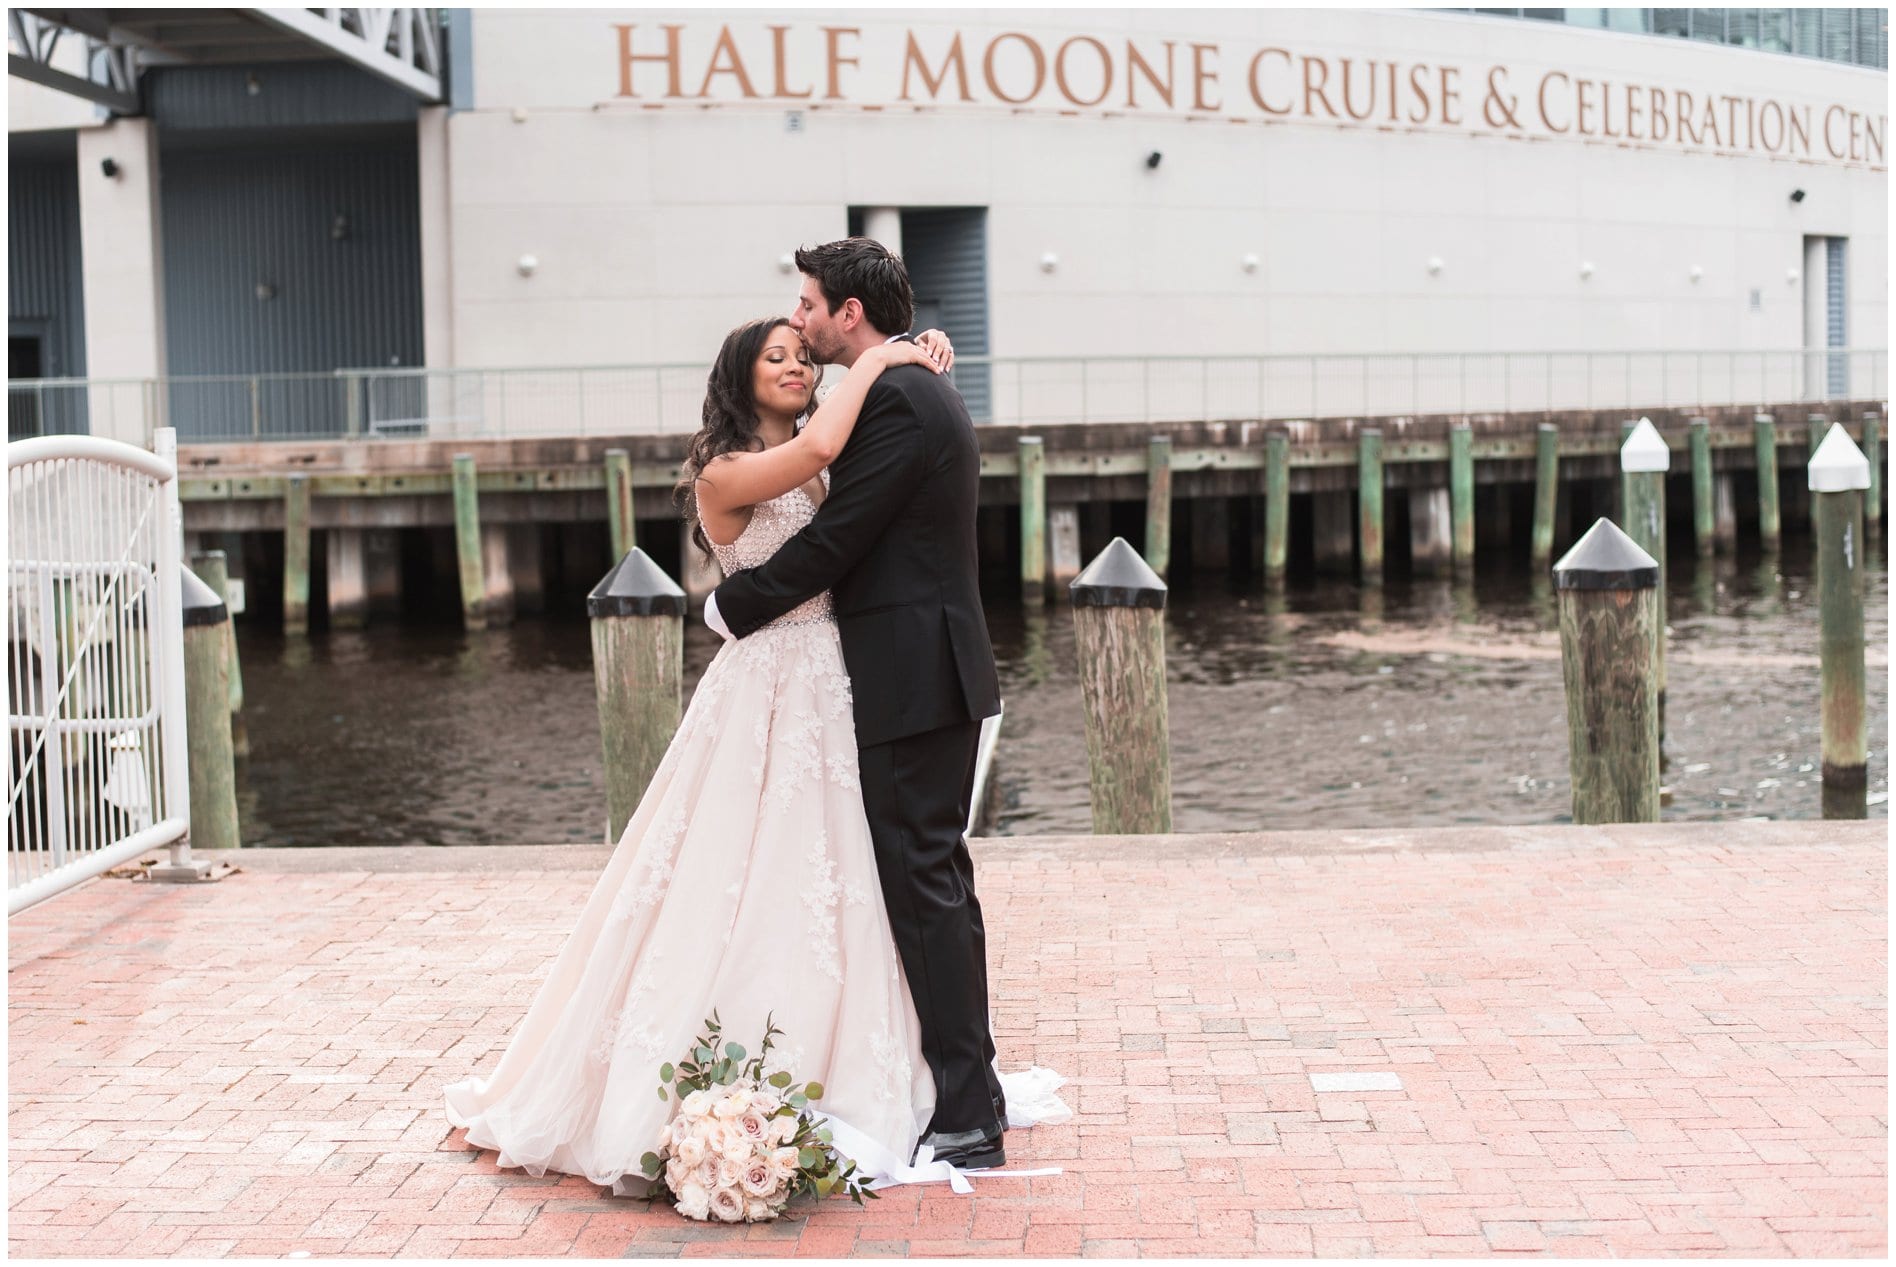 Half Moone Cruise & Celebration Center Wedding